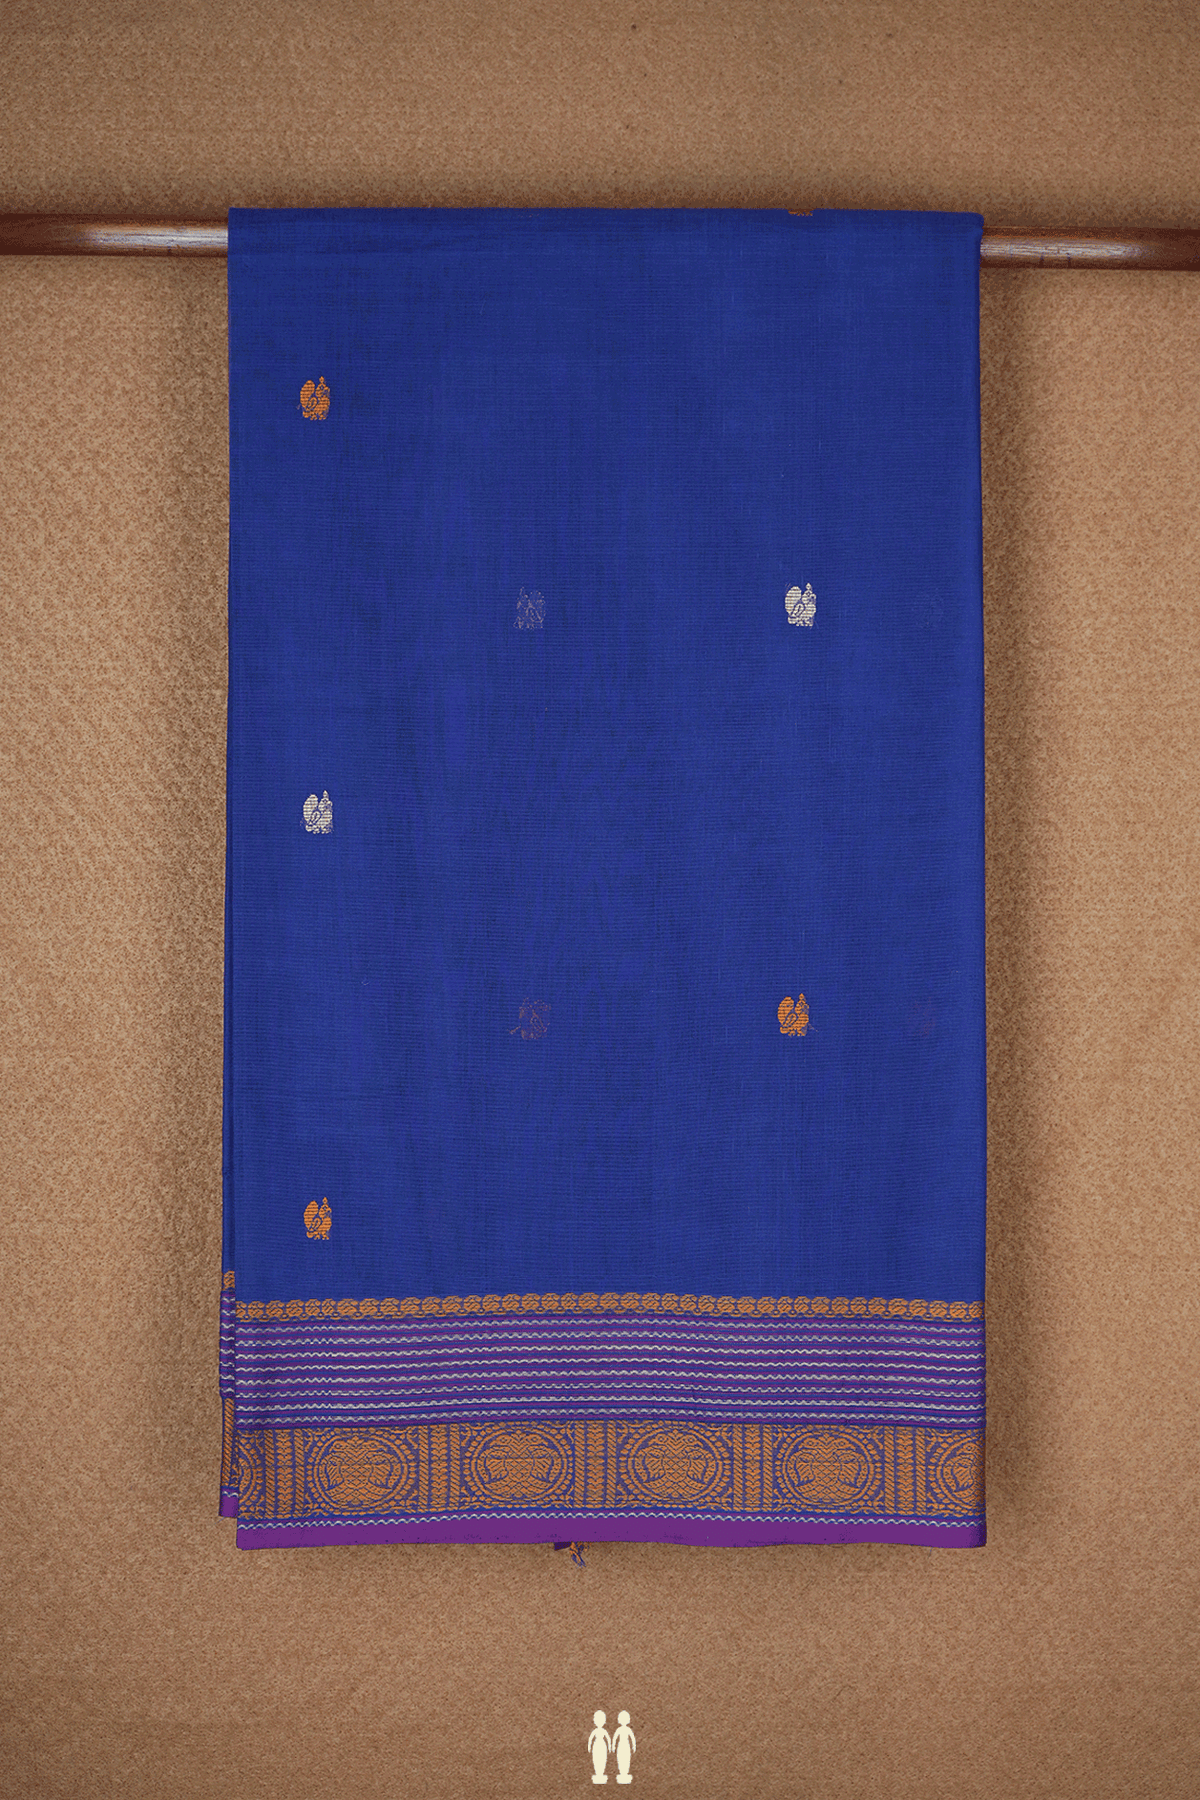 Peacock Buttas Royal Blue Coimbatore Cotton Saree